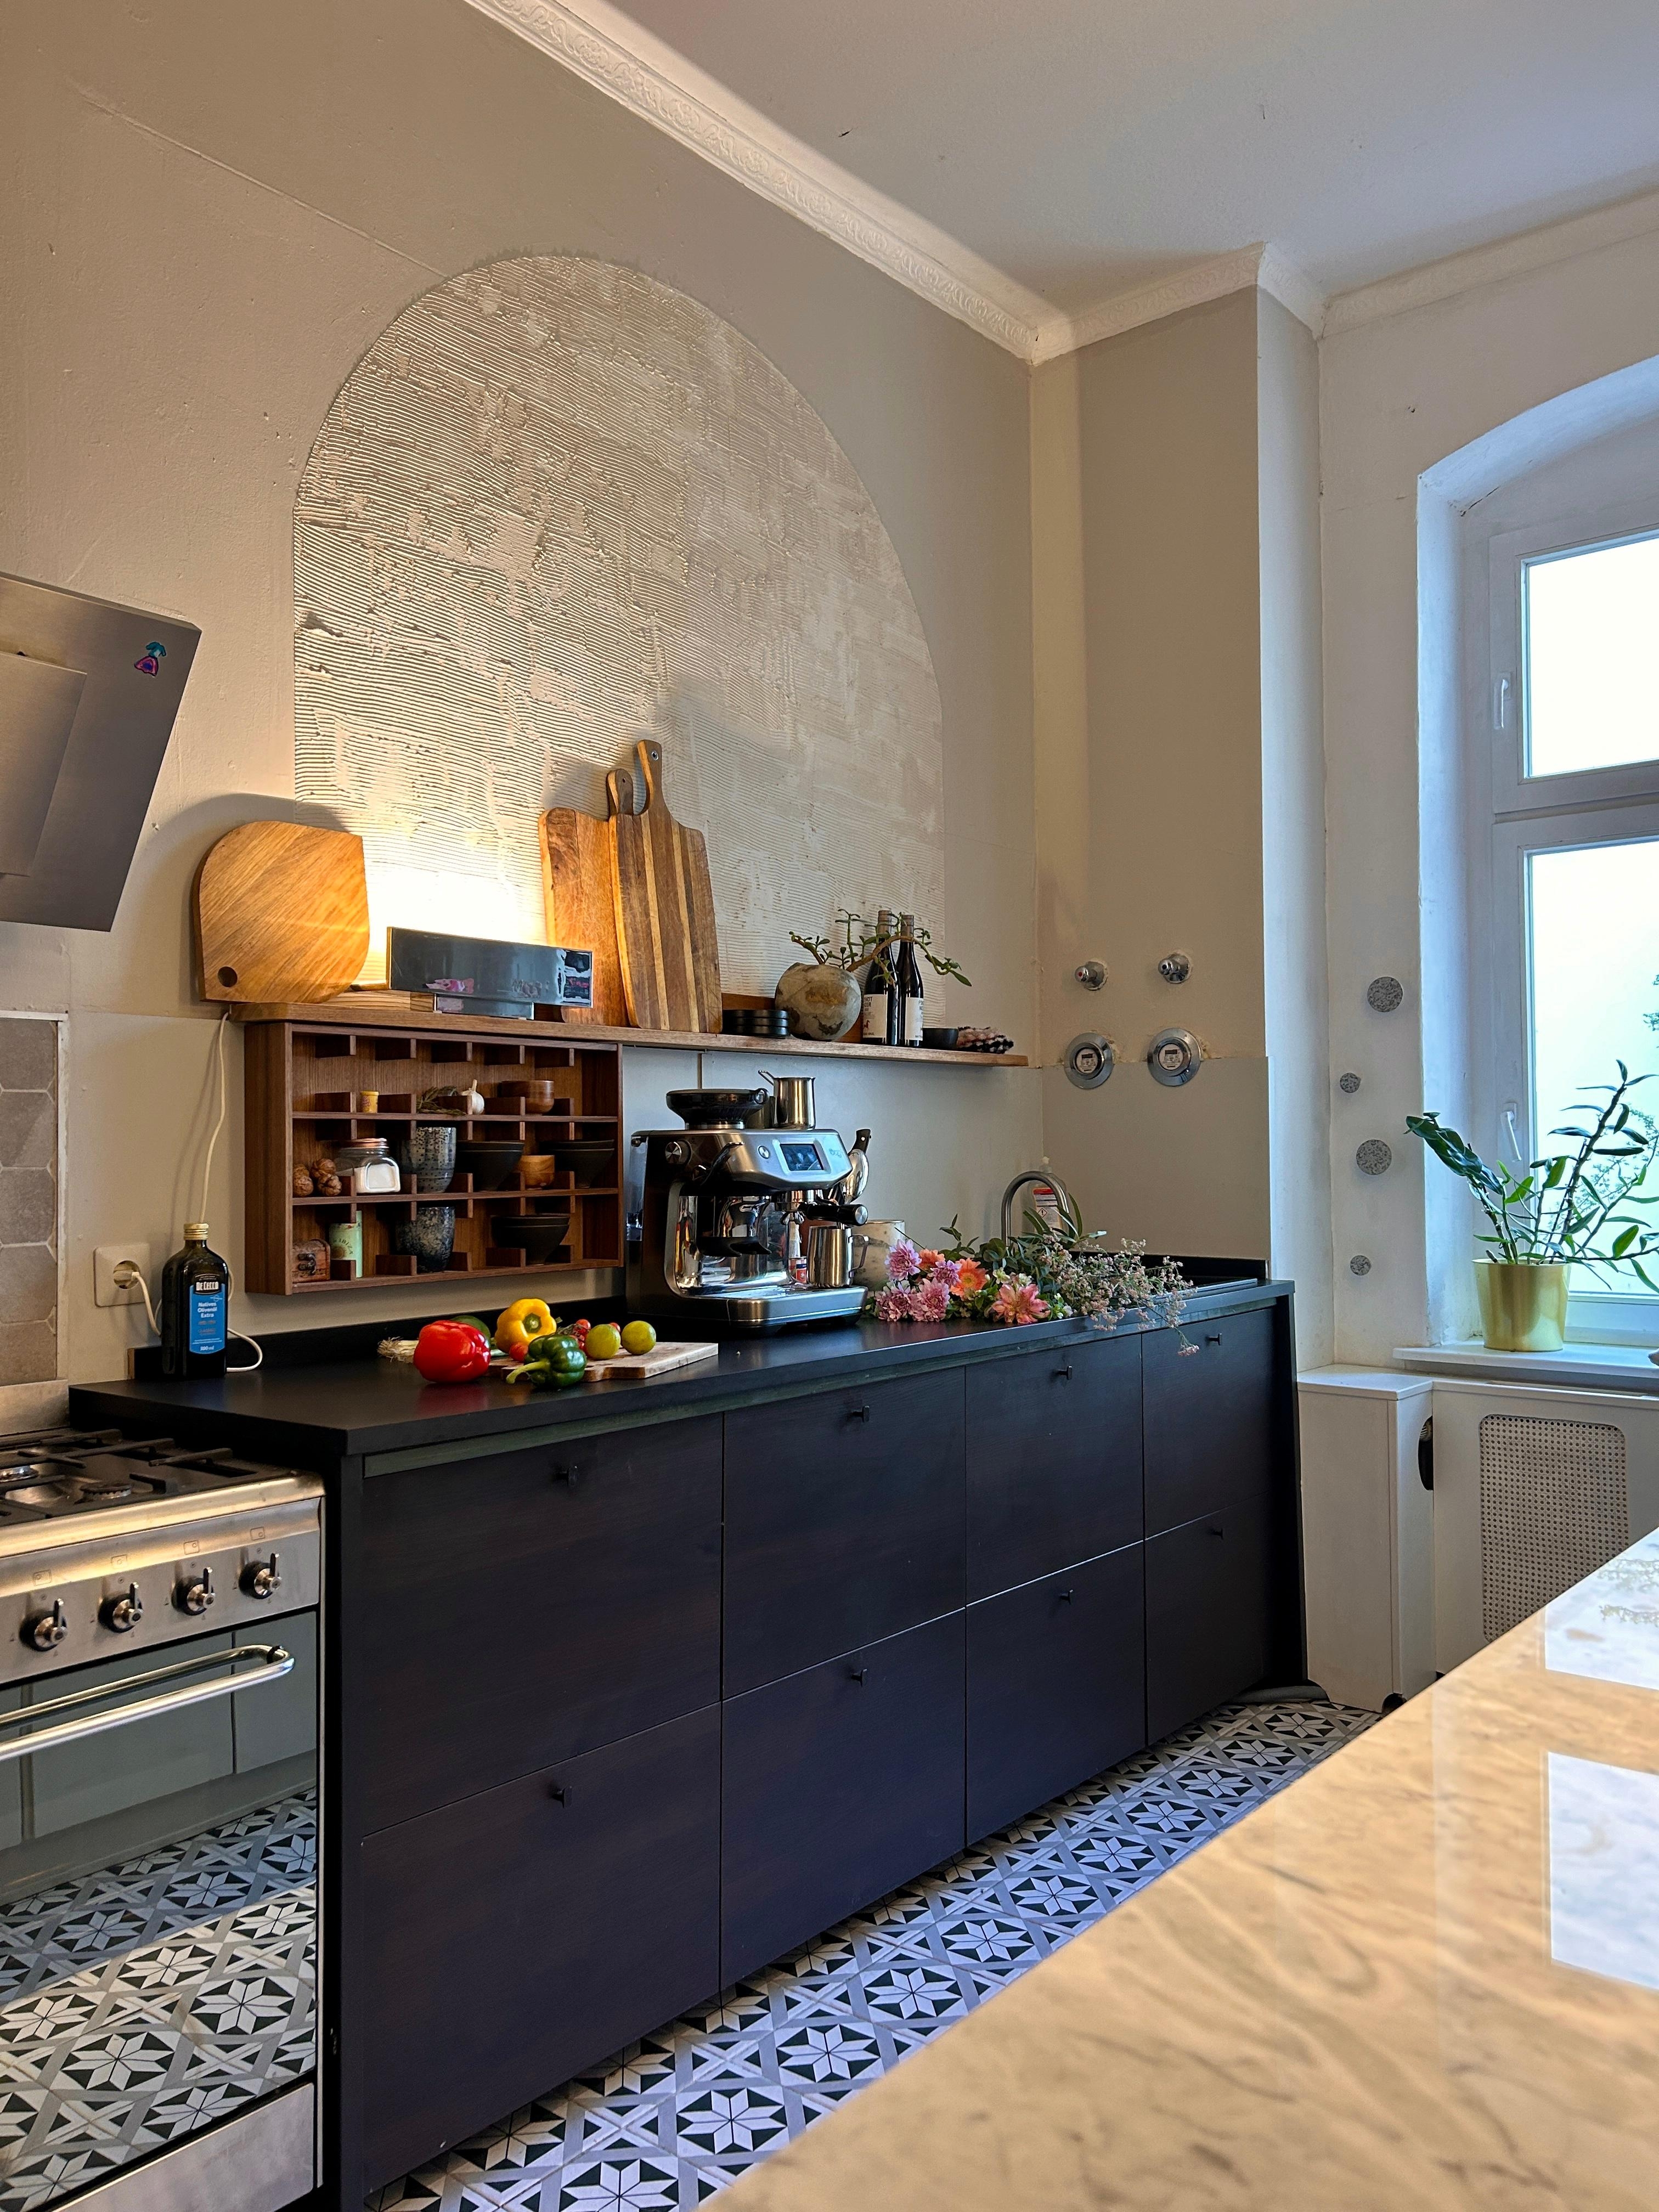 Guten Morgen! 🥐☀️☕️♥️🌸

#küche #cucina #cuisine #maison #altbauliebe #kücheninspiration #kitchendesign #kitchendecor #homedesign #homesweethome #interiordesign